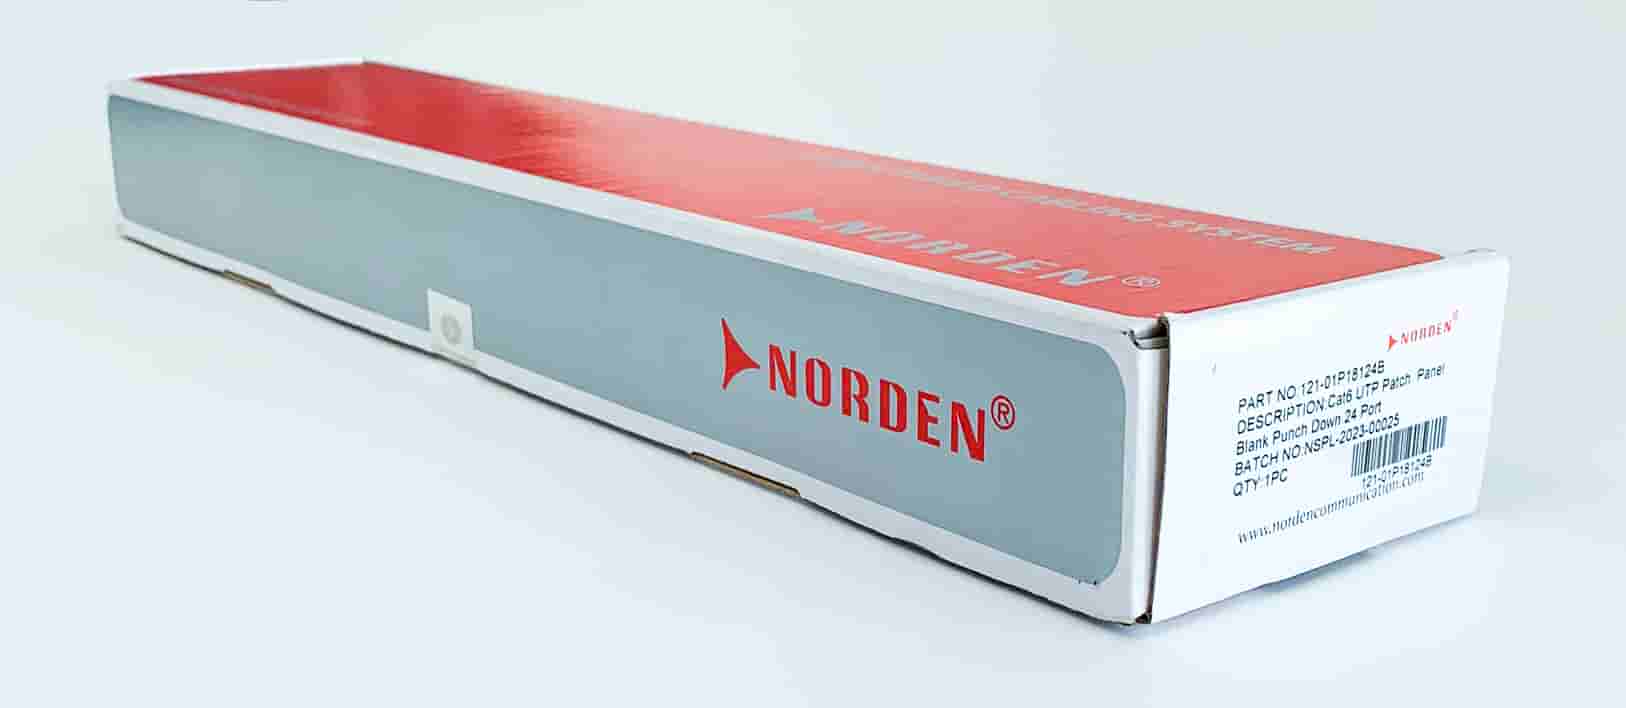 Thanh quản lý cáp Patch Panel 121-01P18124B – Norden: Lựa chọn quản lý cáp thông minh